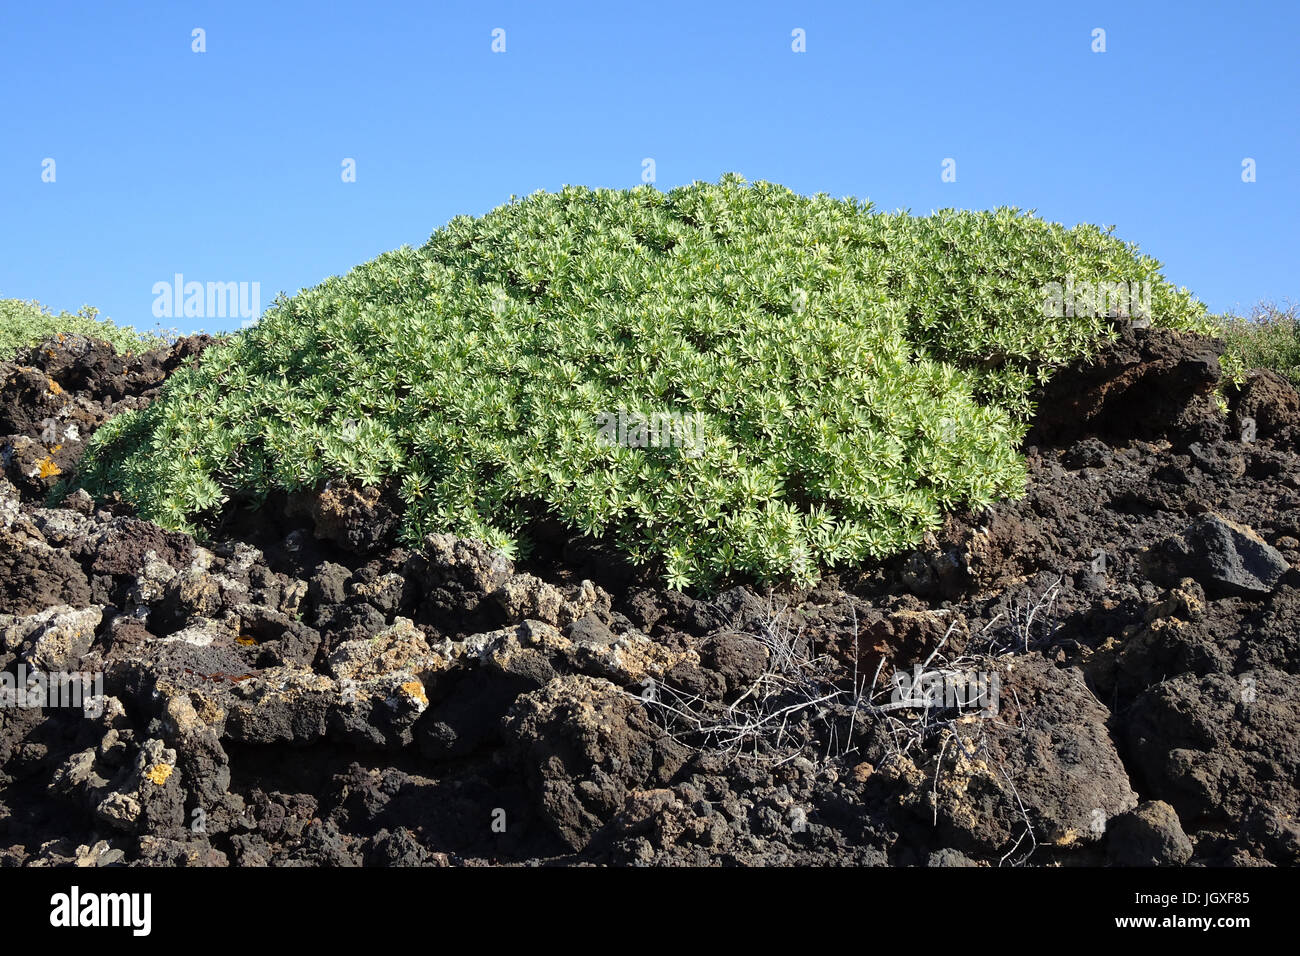 Tabaibastraeucher wachsen auf einem lavafeld, tabaiba dulce, sapin baumier-wolfsmilch (euphorbia balsamifera), kuestenvegetation bei el golfo, Lanzarote, kan Banque D'Images